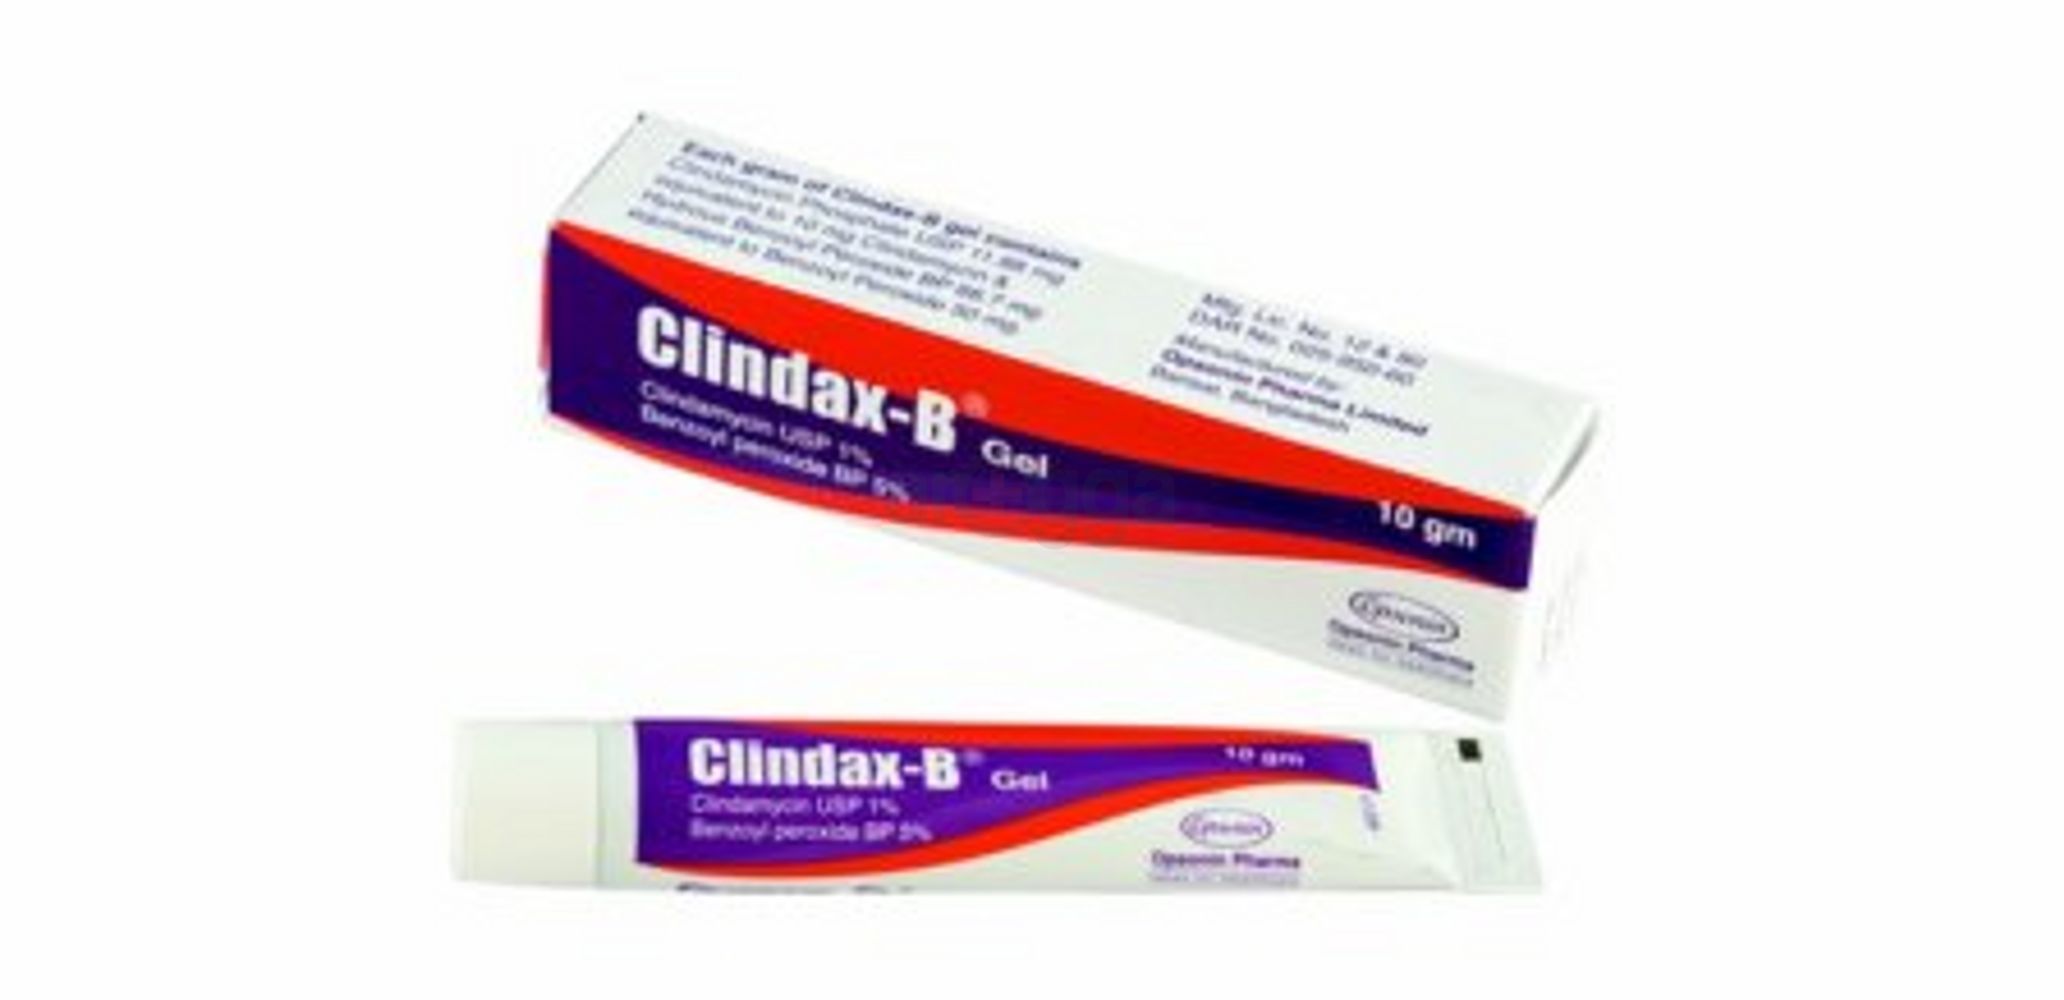 Clindax-B